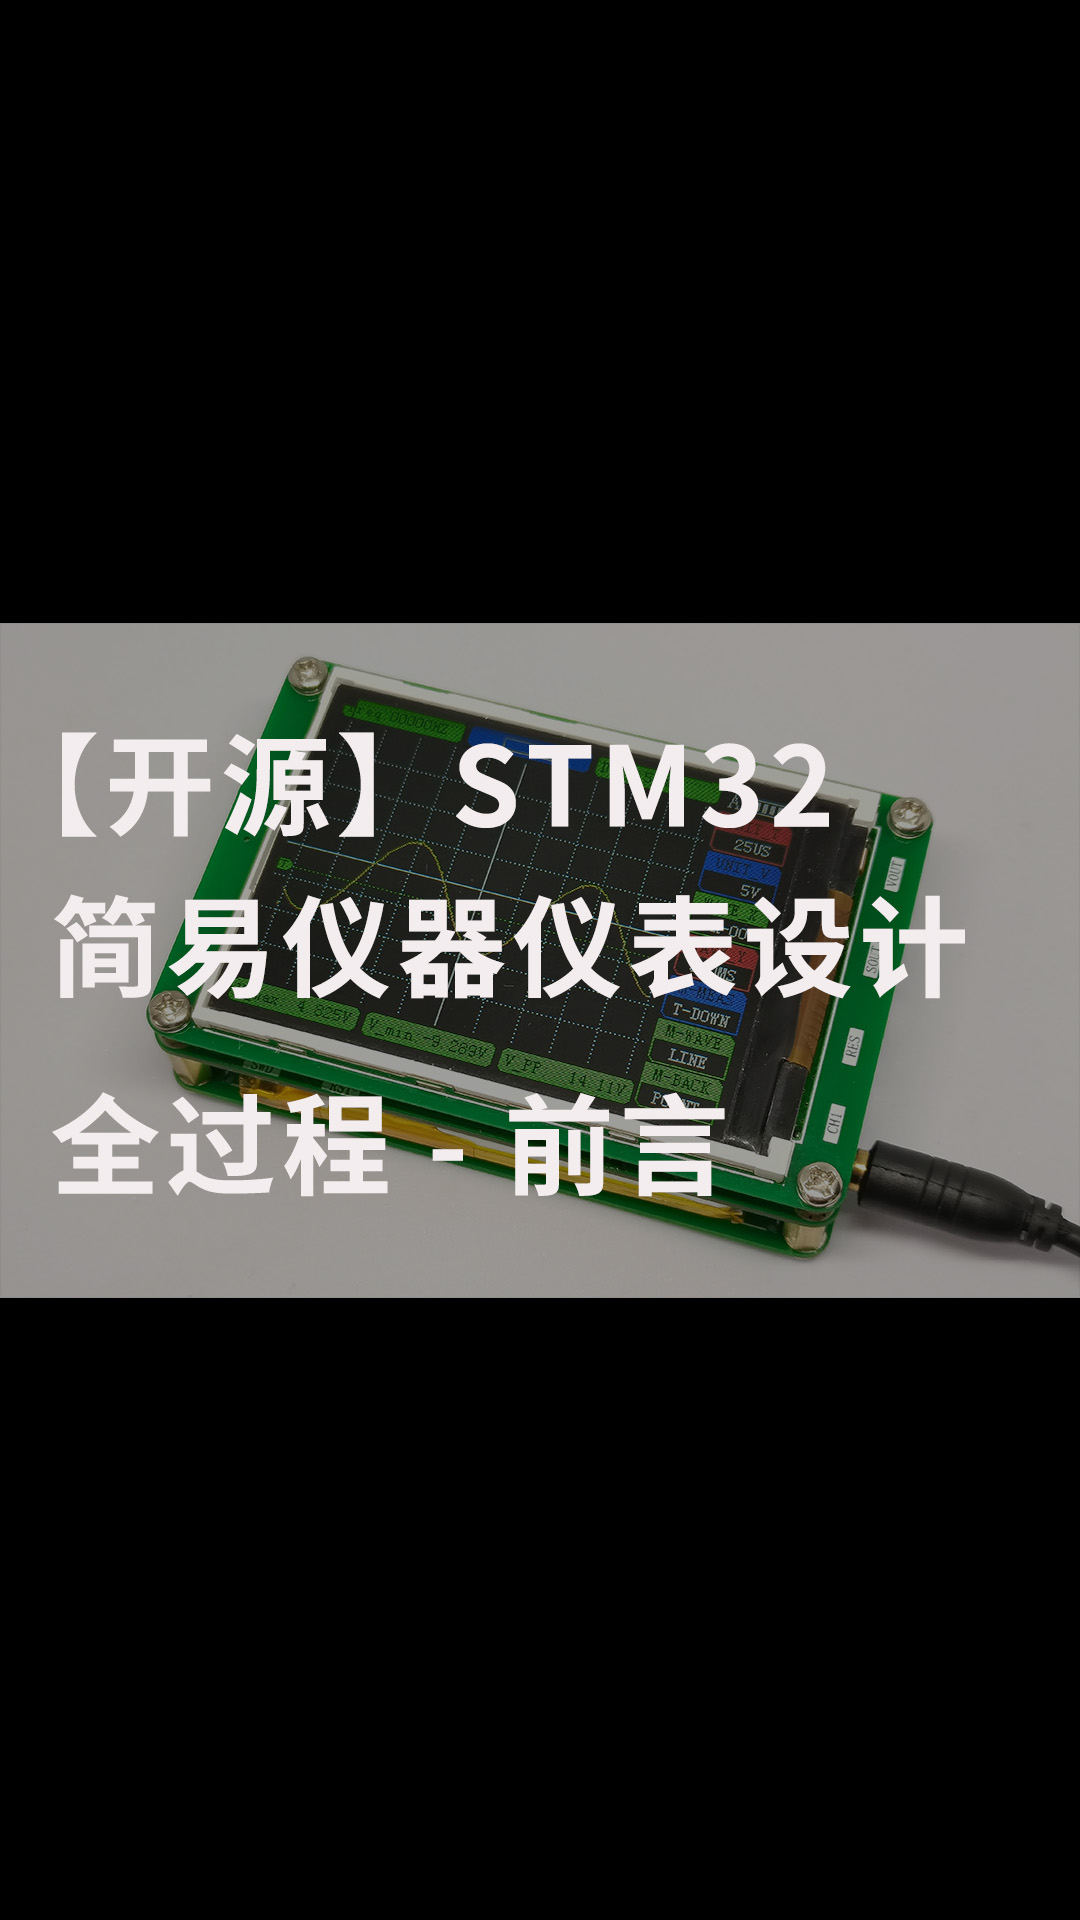 【开源】STM32简易仪器仪表设计全过程 - 前言